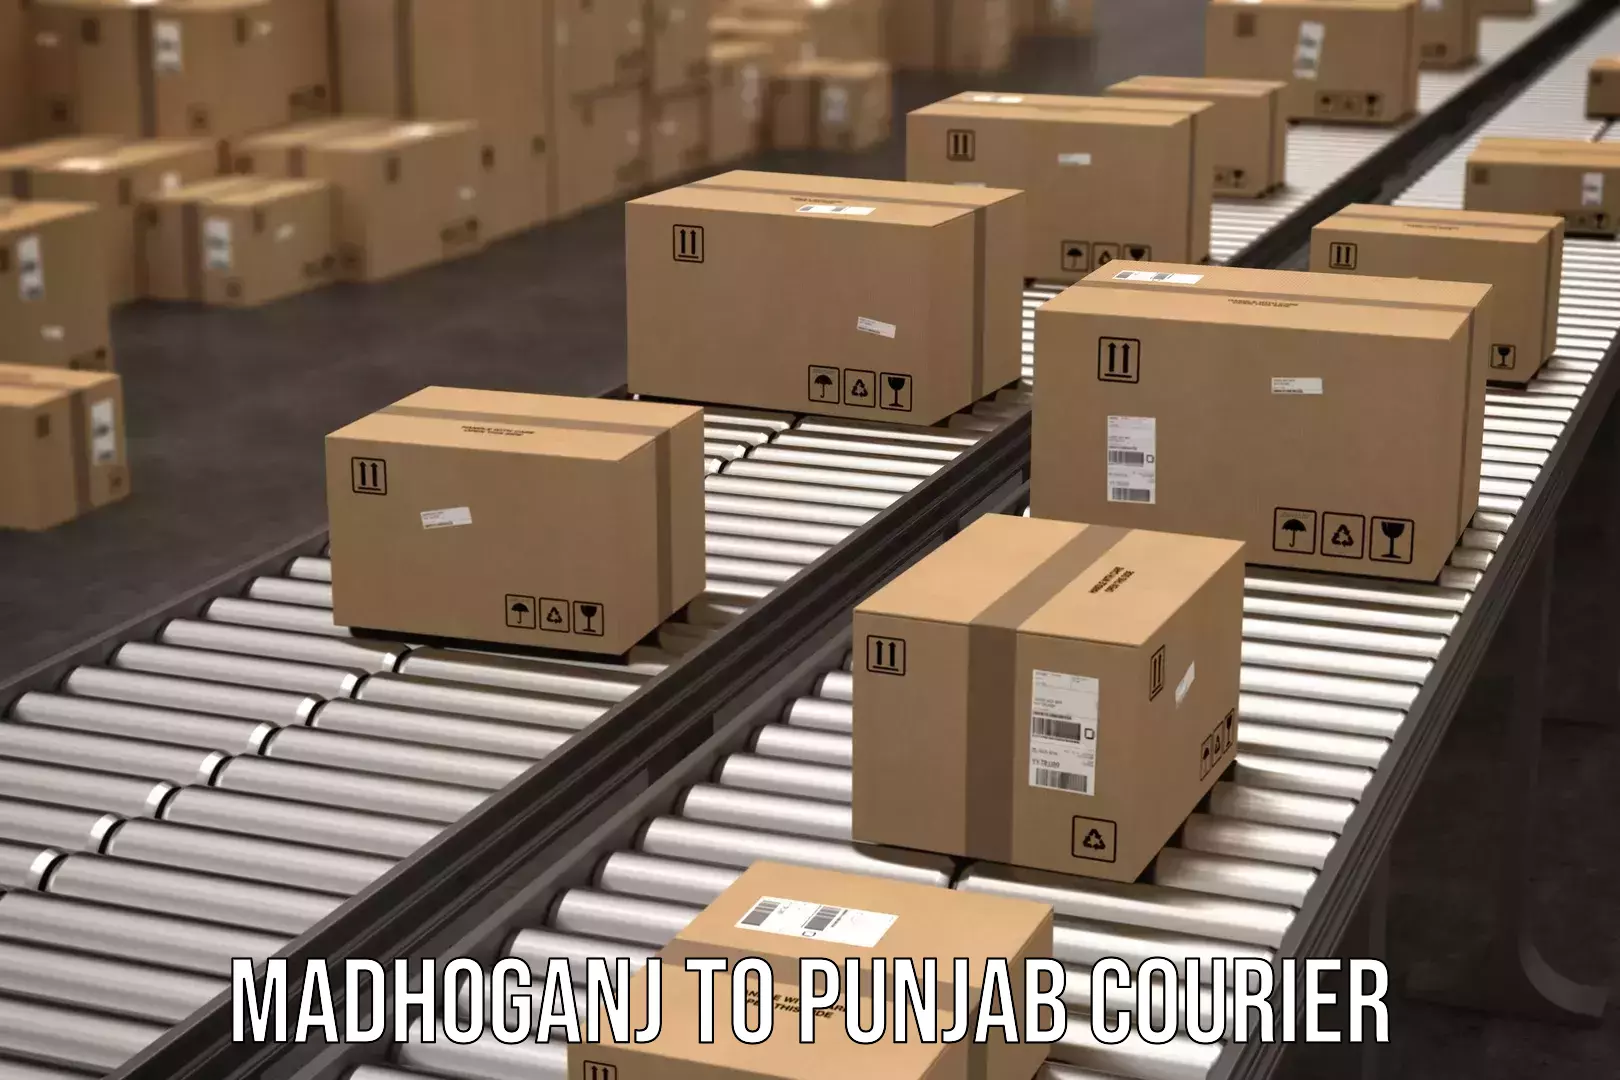 Global parcel delivery Madhoganj to Dinanagar